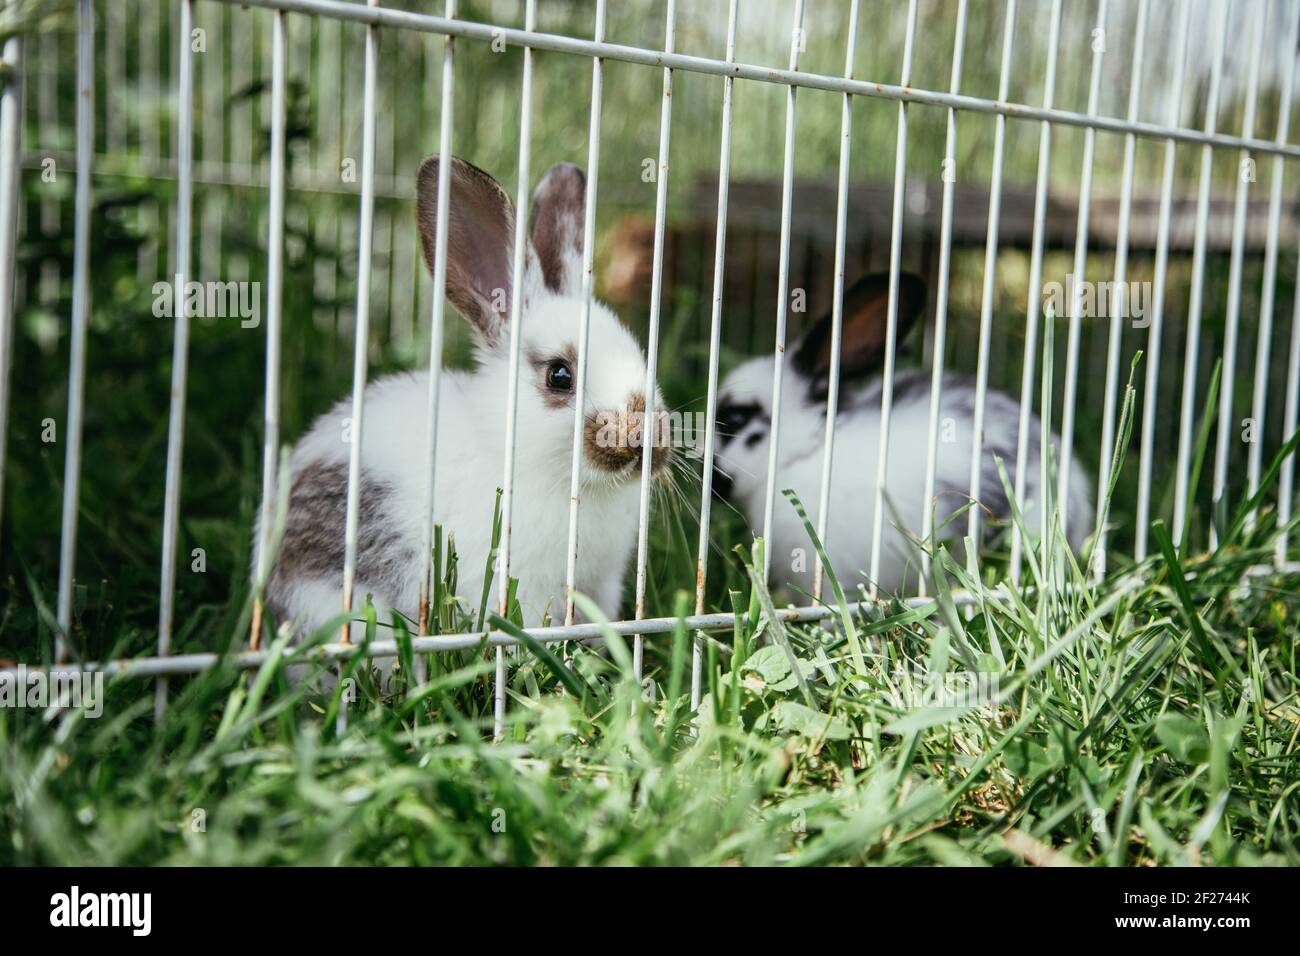 Cute little bunnies in an outdoor compound, green grass, summertime Stock Photo